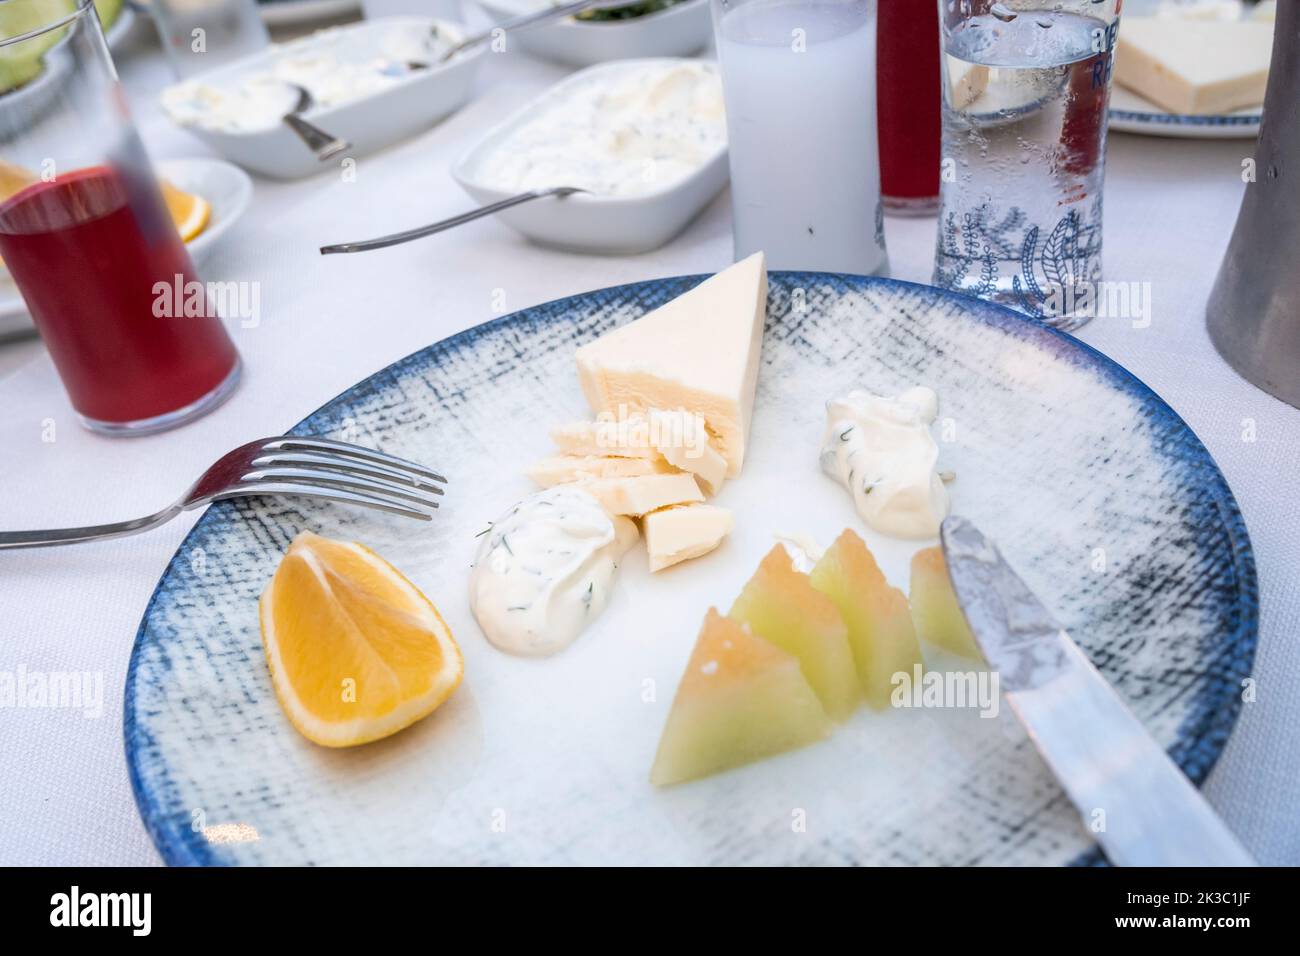 Table de raki turque avec fromage blanc de melon de citron et apéritif, jus de navet avec rakı, alcool turc traditionnel connu sous le nom de Rakı, aliments dans l'assiette Banque D'Images